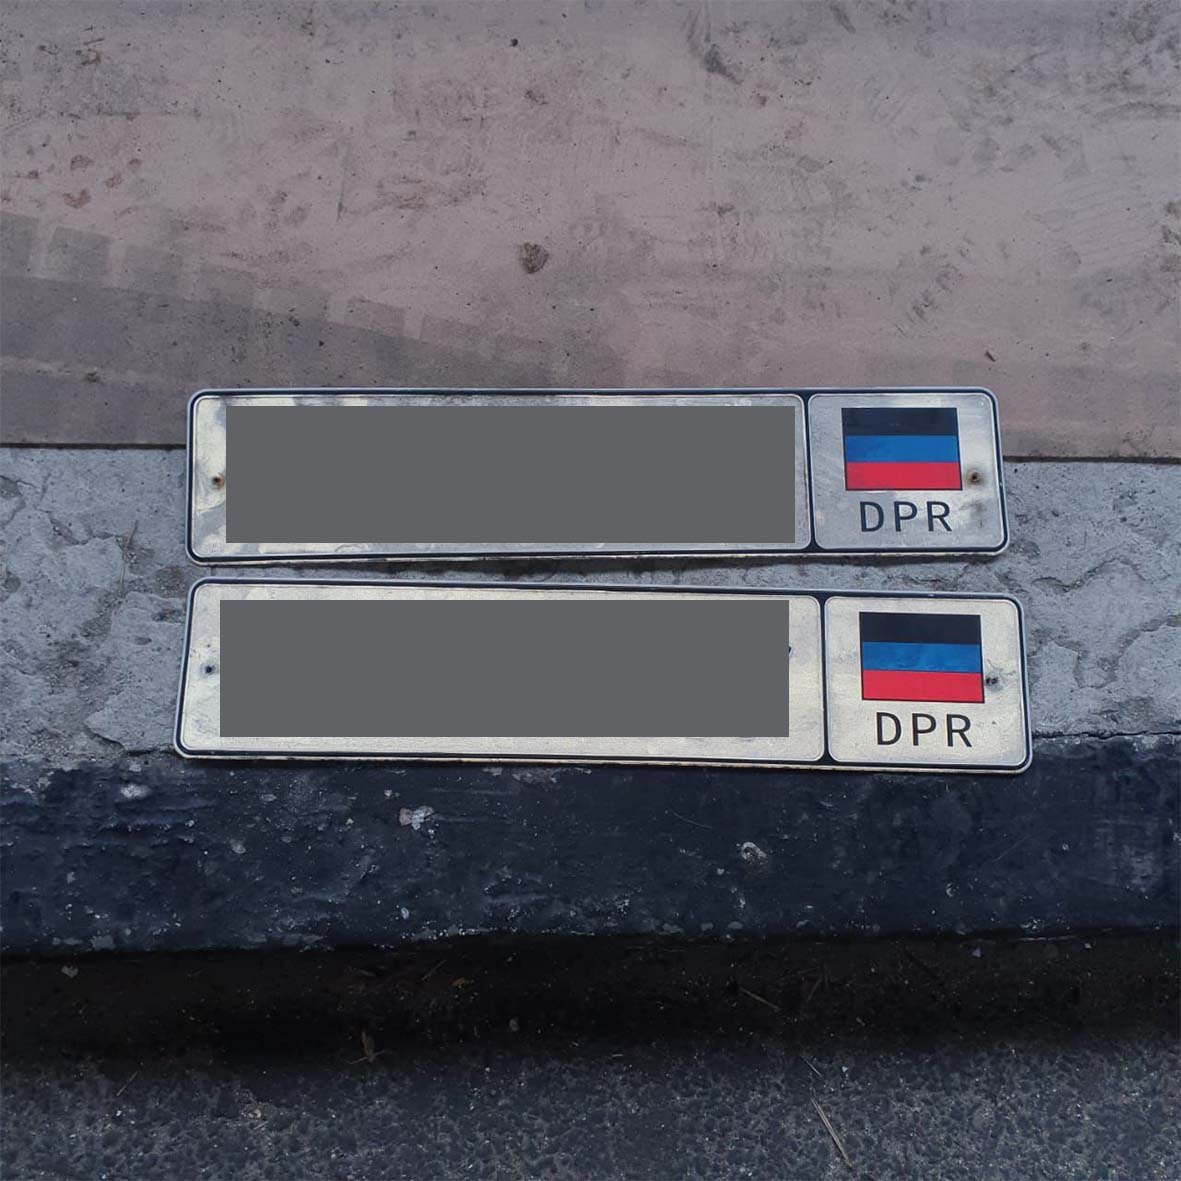 Харьковские пограничники выявили контрабанду валюты из т.н. ДНР (фото)